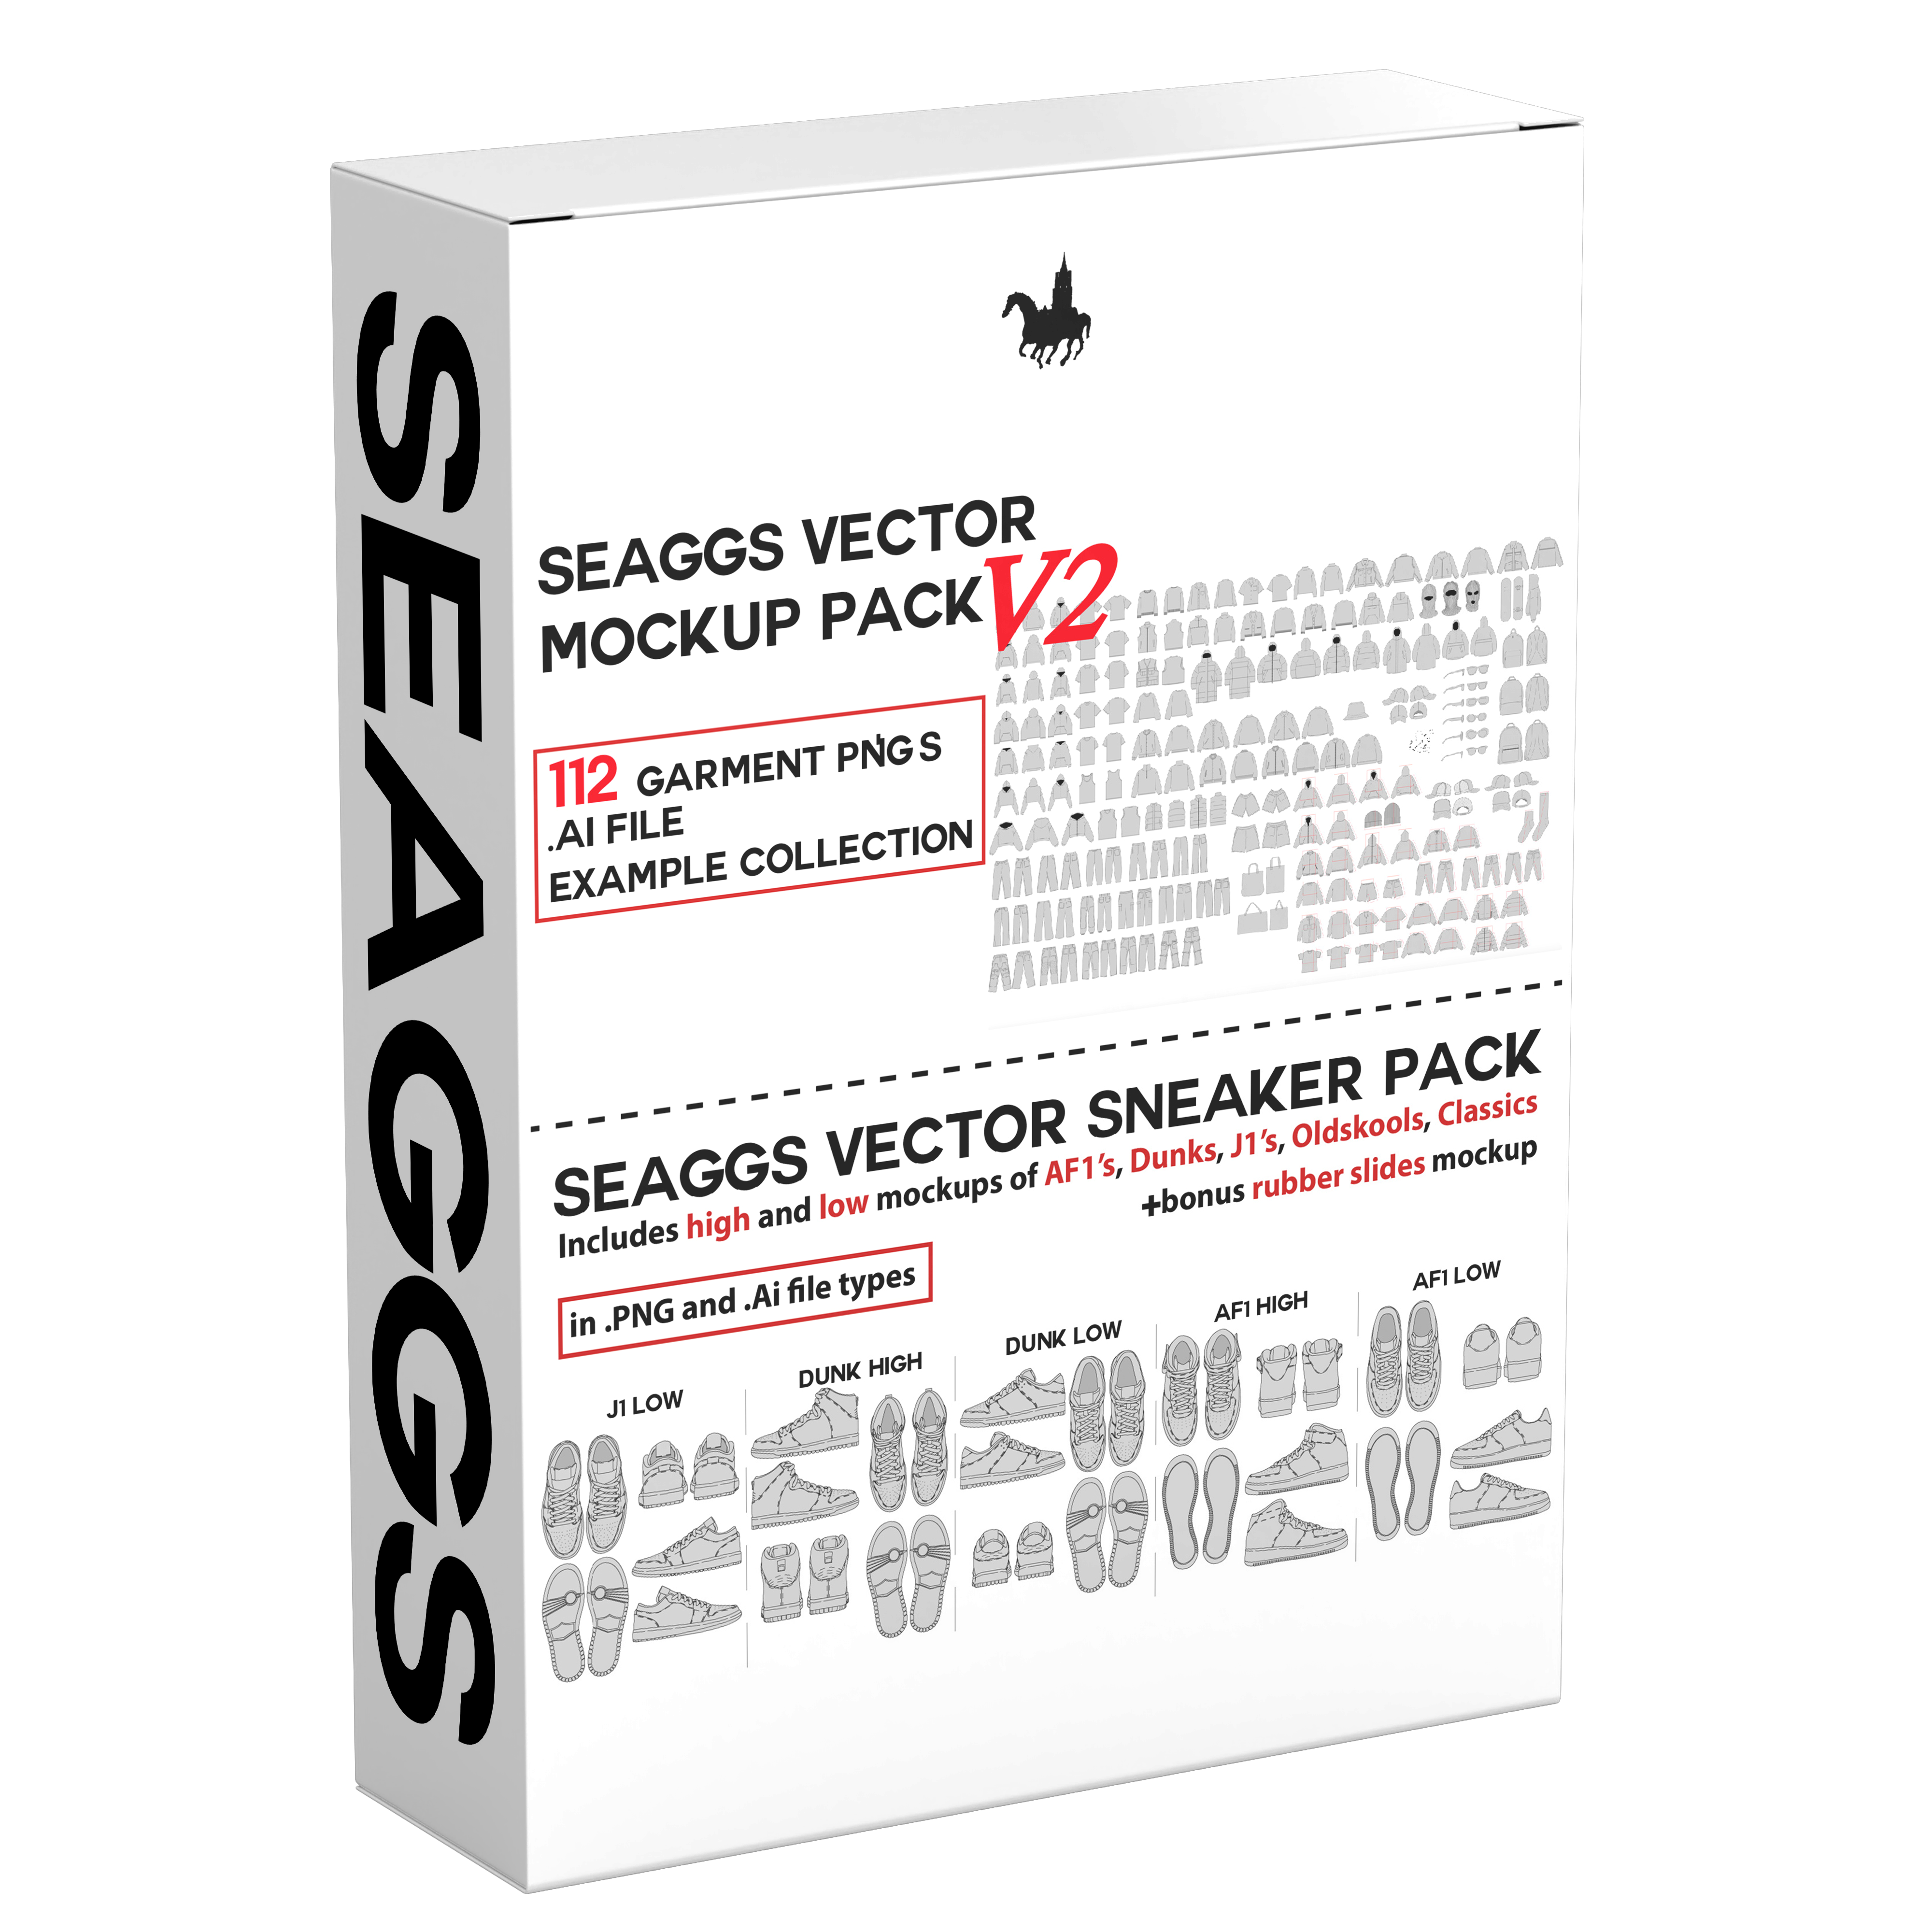 Seaggs Vector Mockup Pack V2 + Sneaker Mockup Pack Bundle